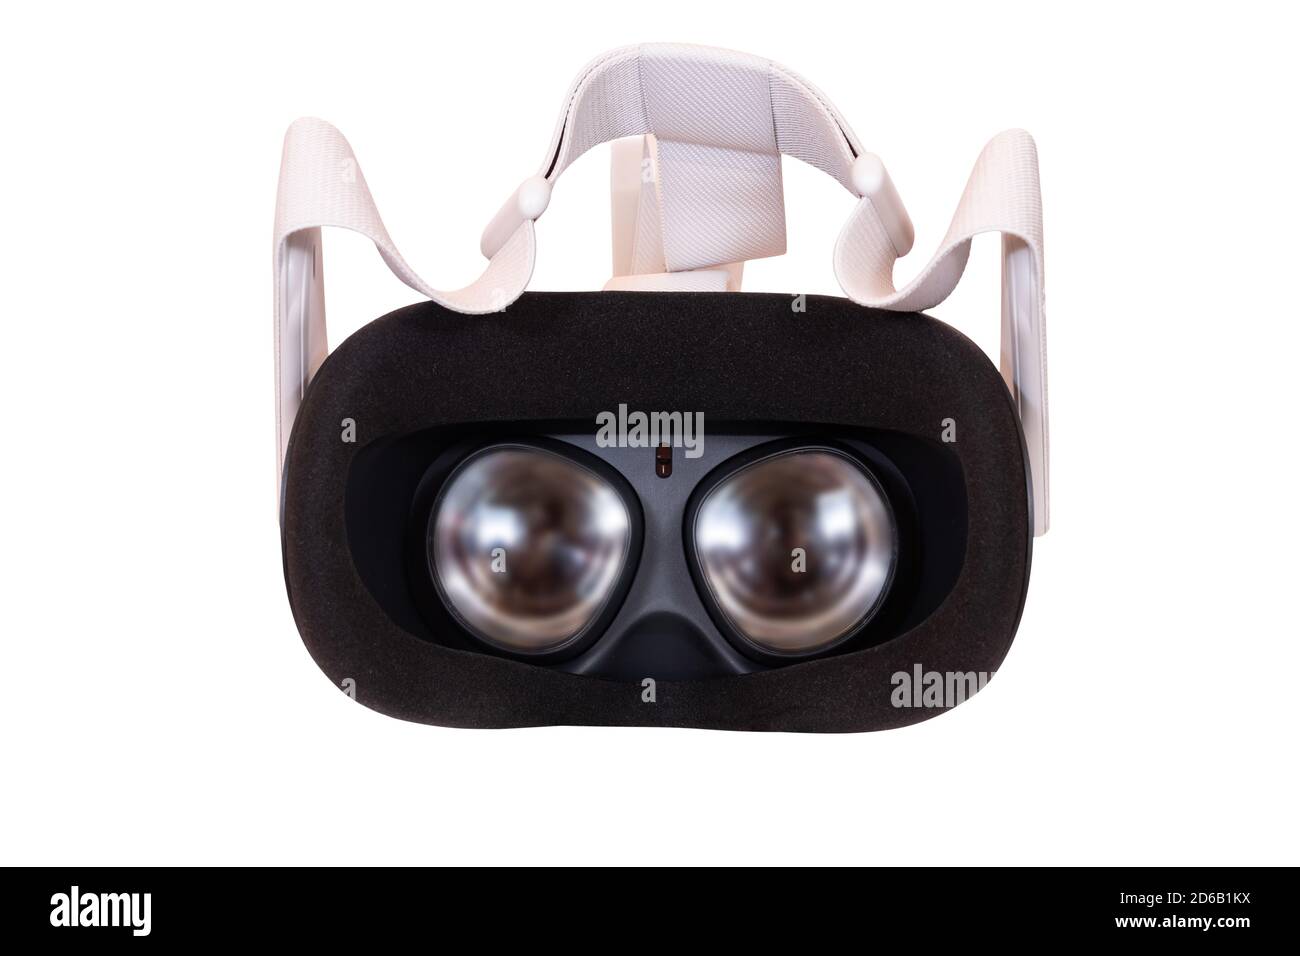 Huelva, Spagna-13 ottobre 2020: Interno di Oculus quest 2, la nuova generazione di realtà virtuale all-in-one. Con un fattore di forma all-in-one riprogettato, nuovo Touch Foto Stock